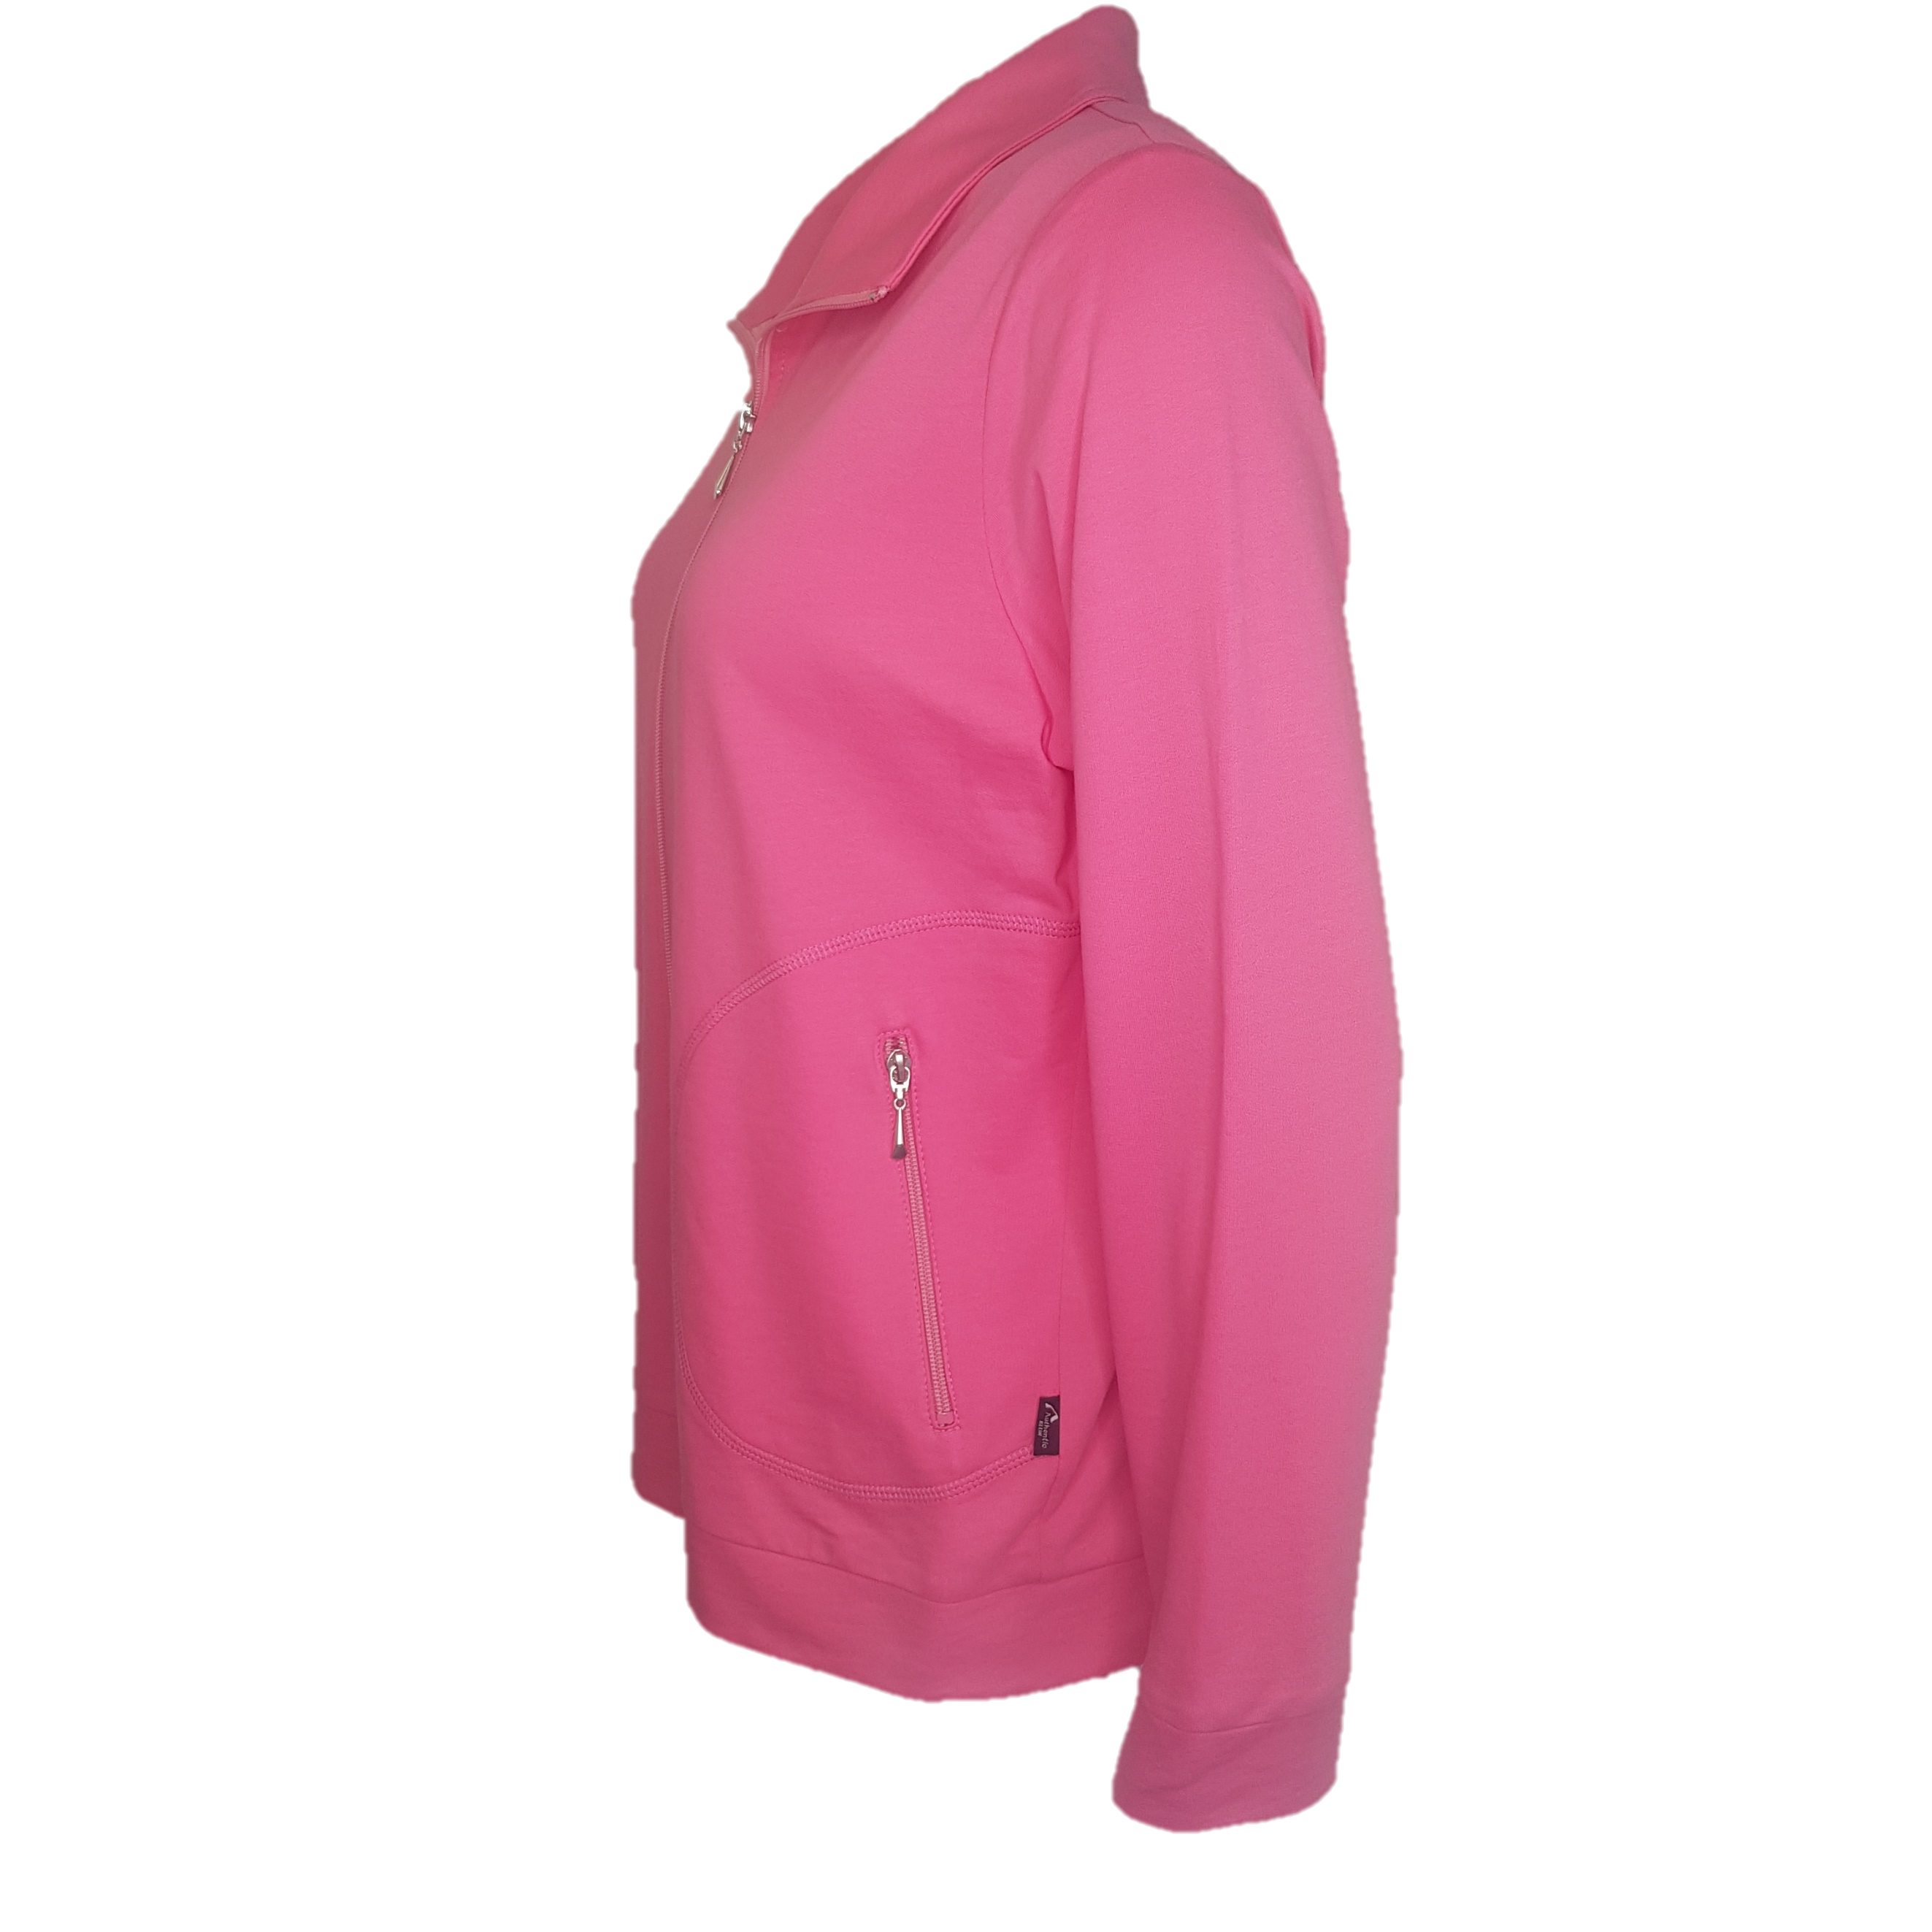 Authentic Baumwolle aus Sport- und Sweatjacke Pink 100% Damen Klein Freizeitjacke